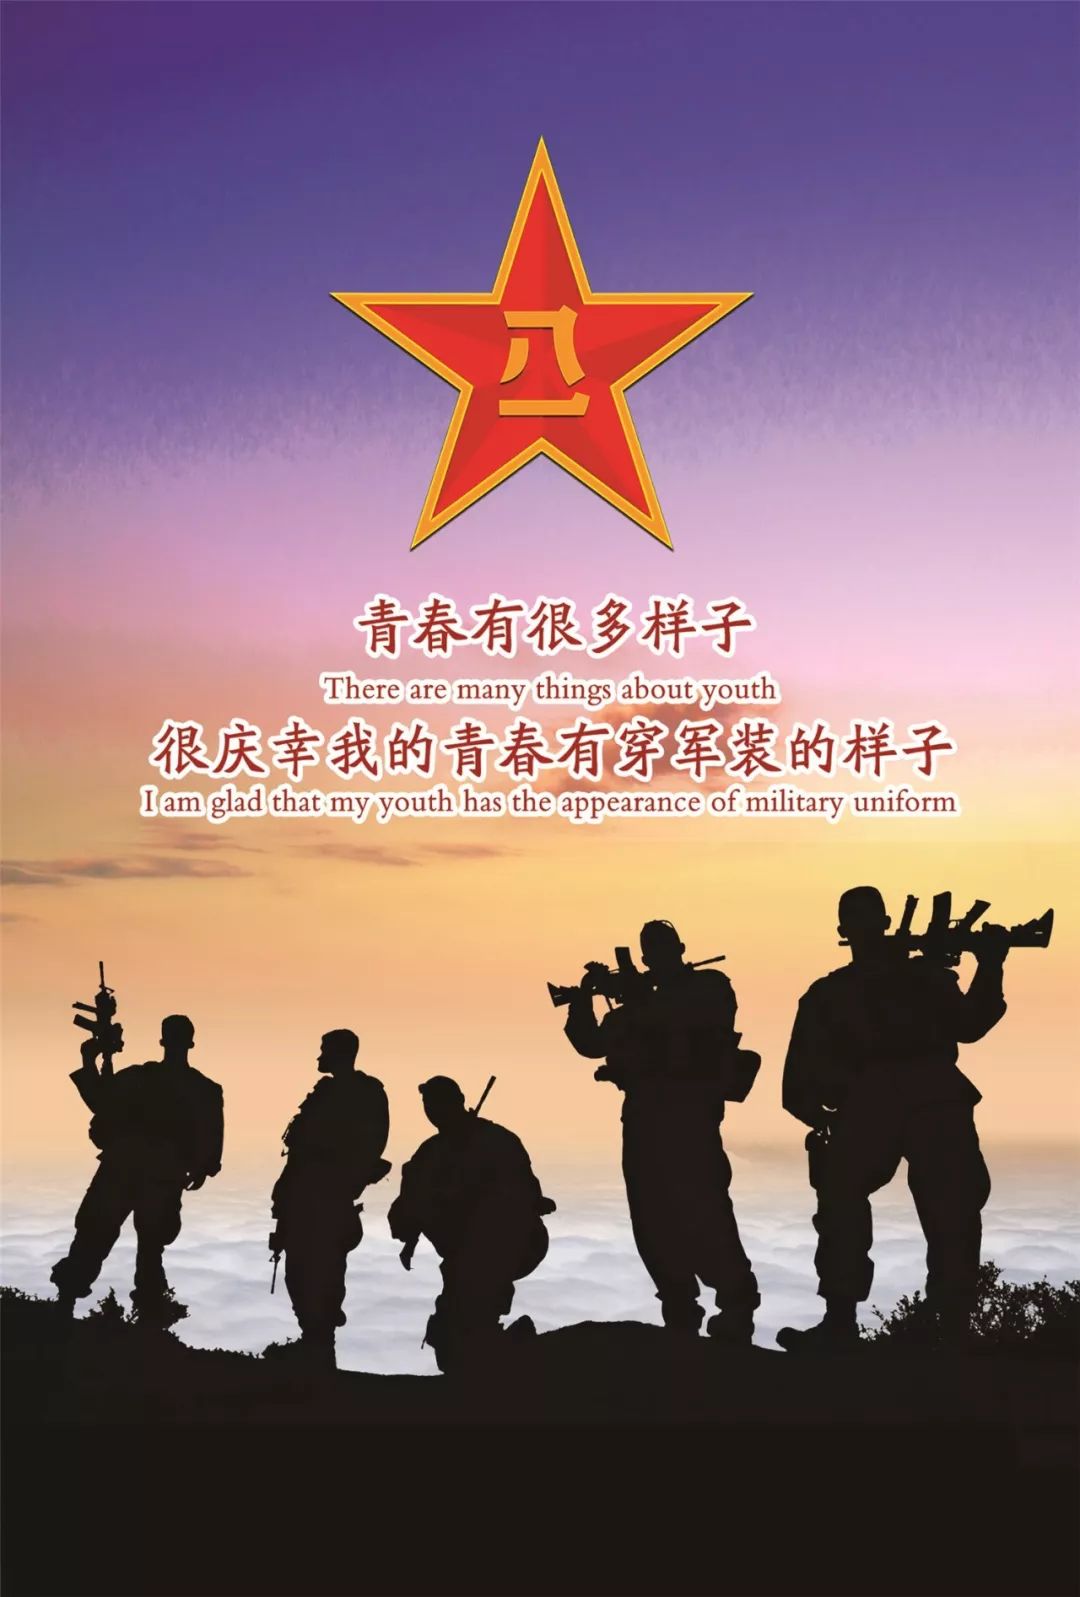 平罗县2019年征兵宣传手册来了!